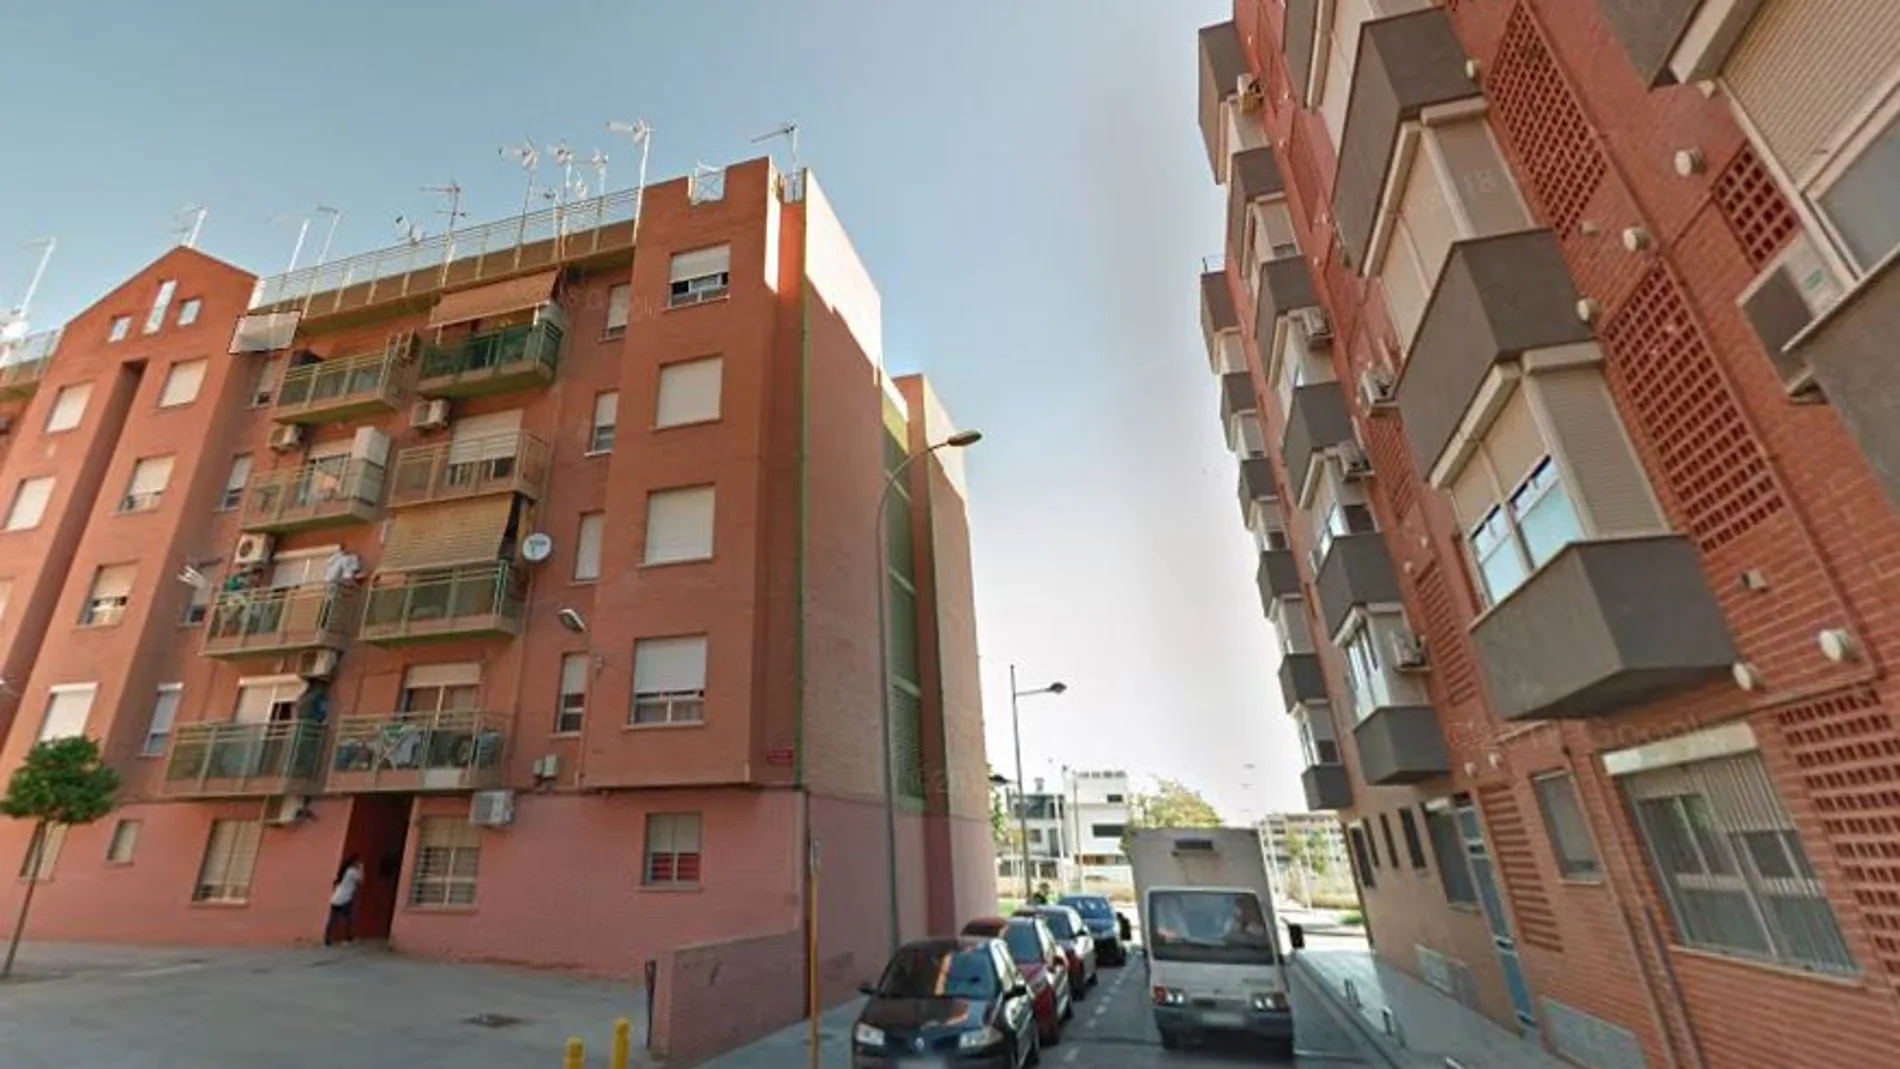 El incendio se produjo en la calle L' Horta de Valencia